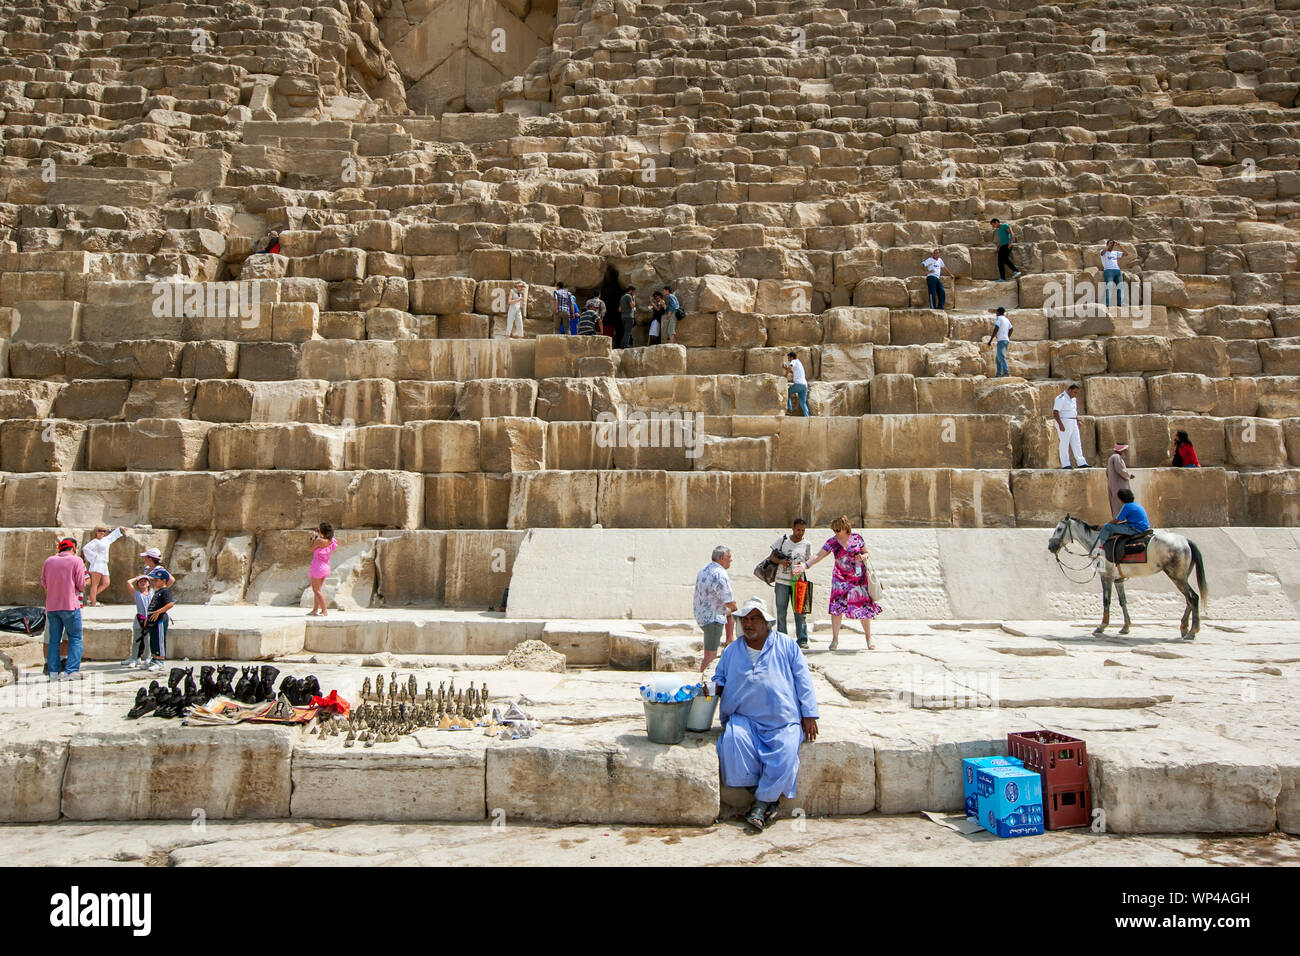 Kairo, Ägypten - Mai 03, 2013: Besucher der Giza Plateau in Kairo in Ägypten Aufstieg über die riesigen Steinblöcke der Cheops-pyramide. Stockfoto